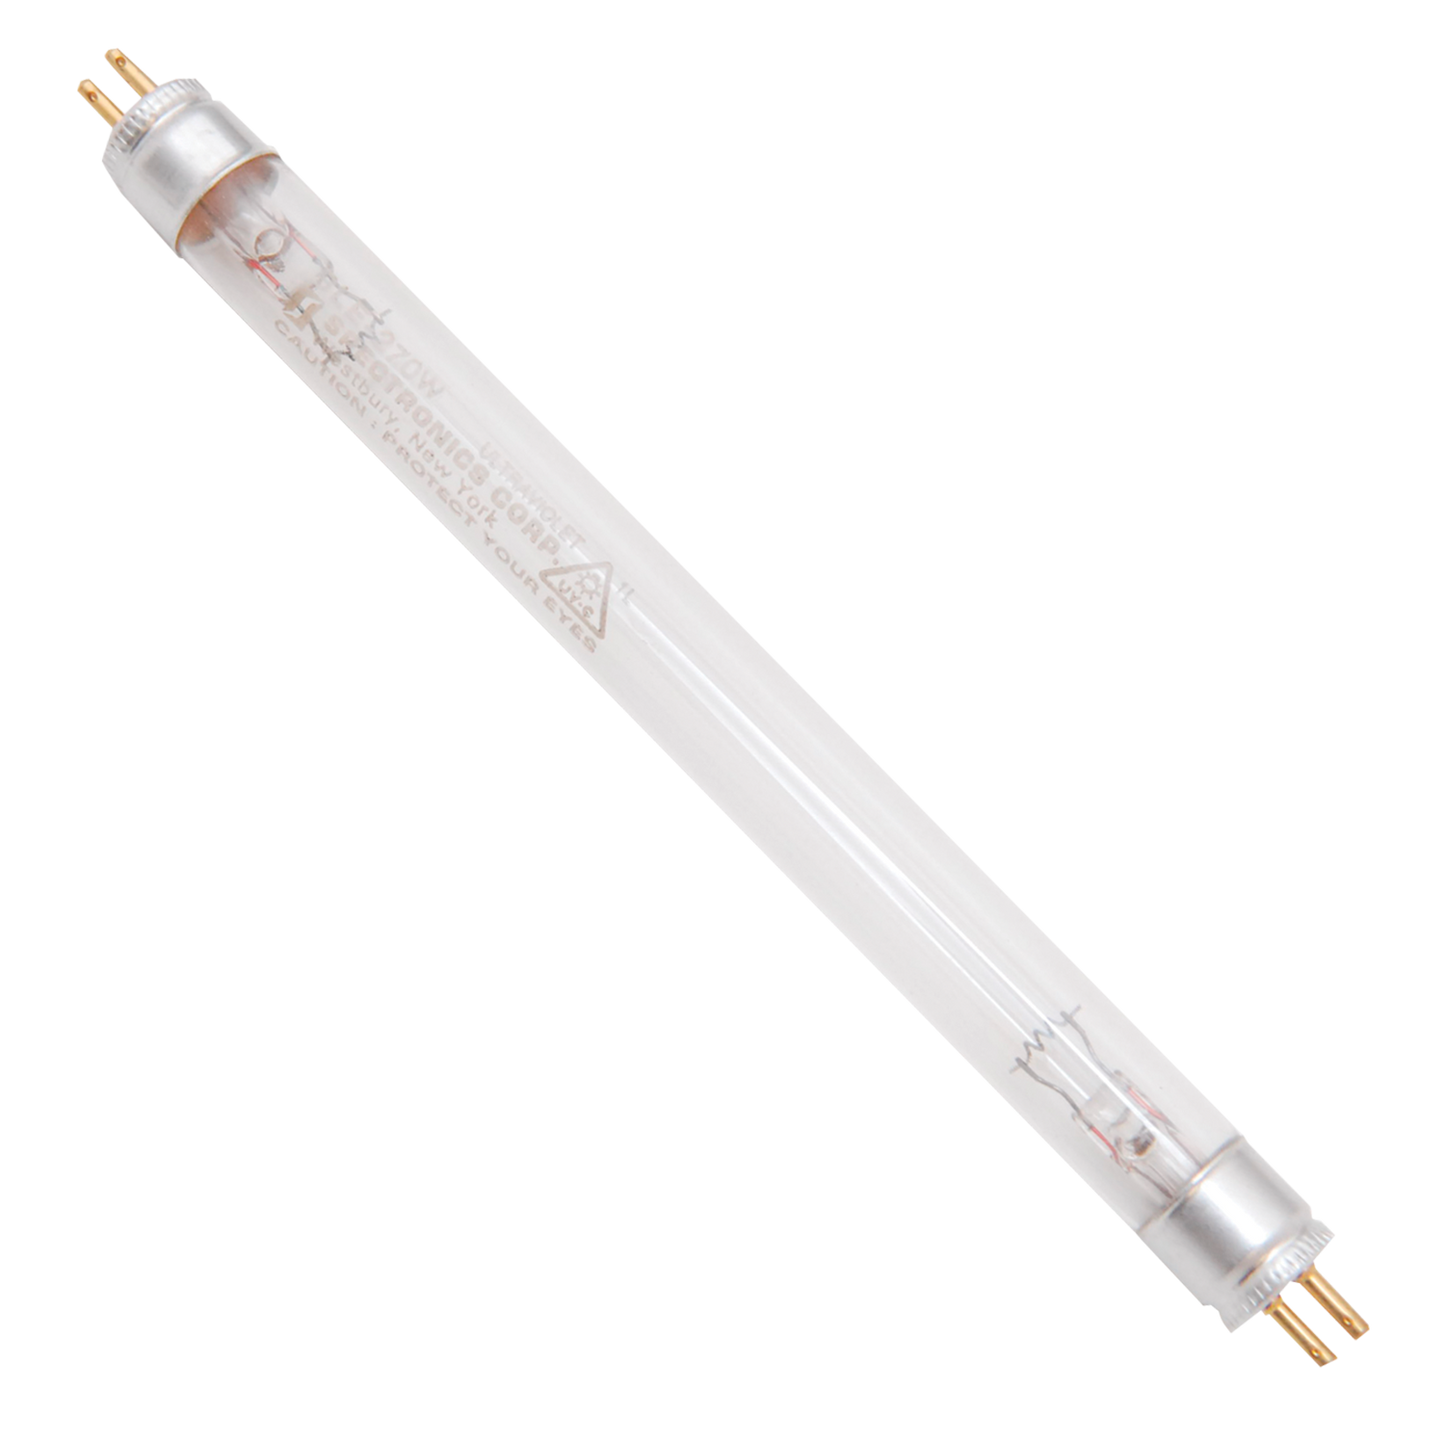 Ampoule UV E27 actinique UV-A 360nm